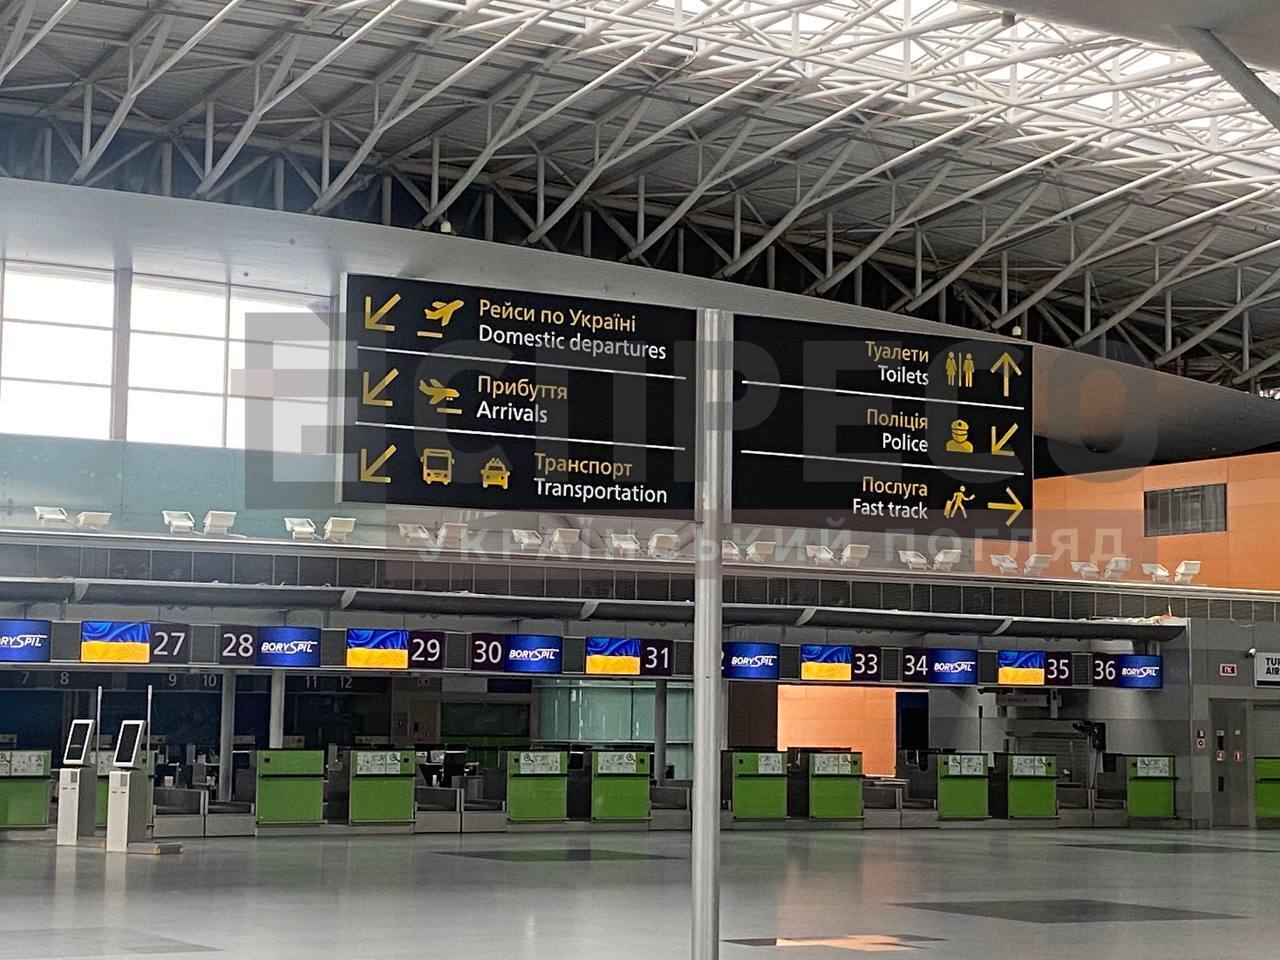 Аэропорт "Борисполь" может возобновить работу за три недели: кто работает над восстановлением и что нужно для открытия